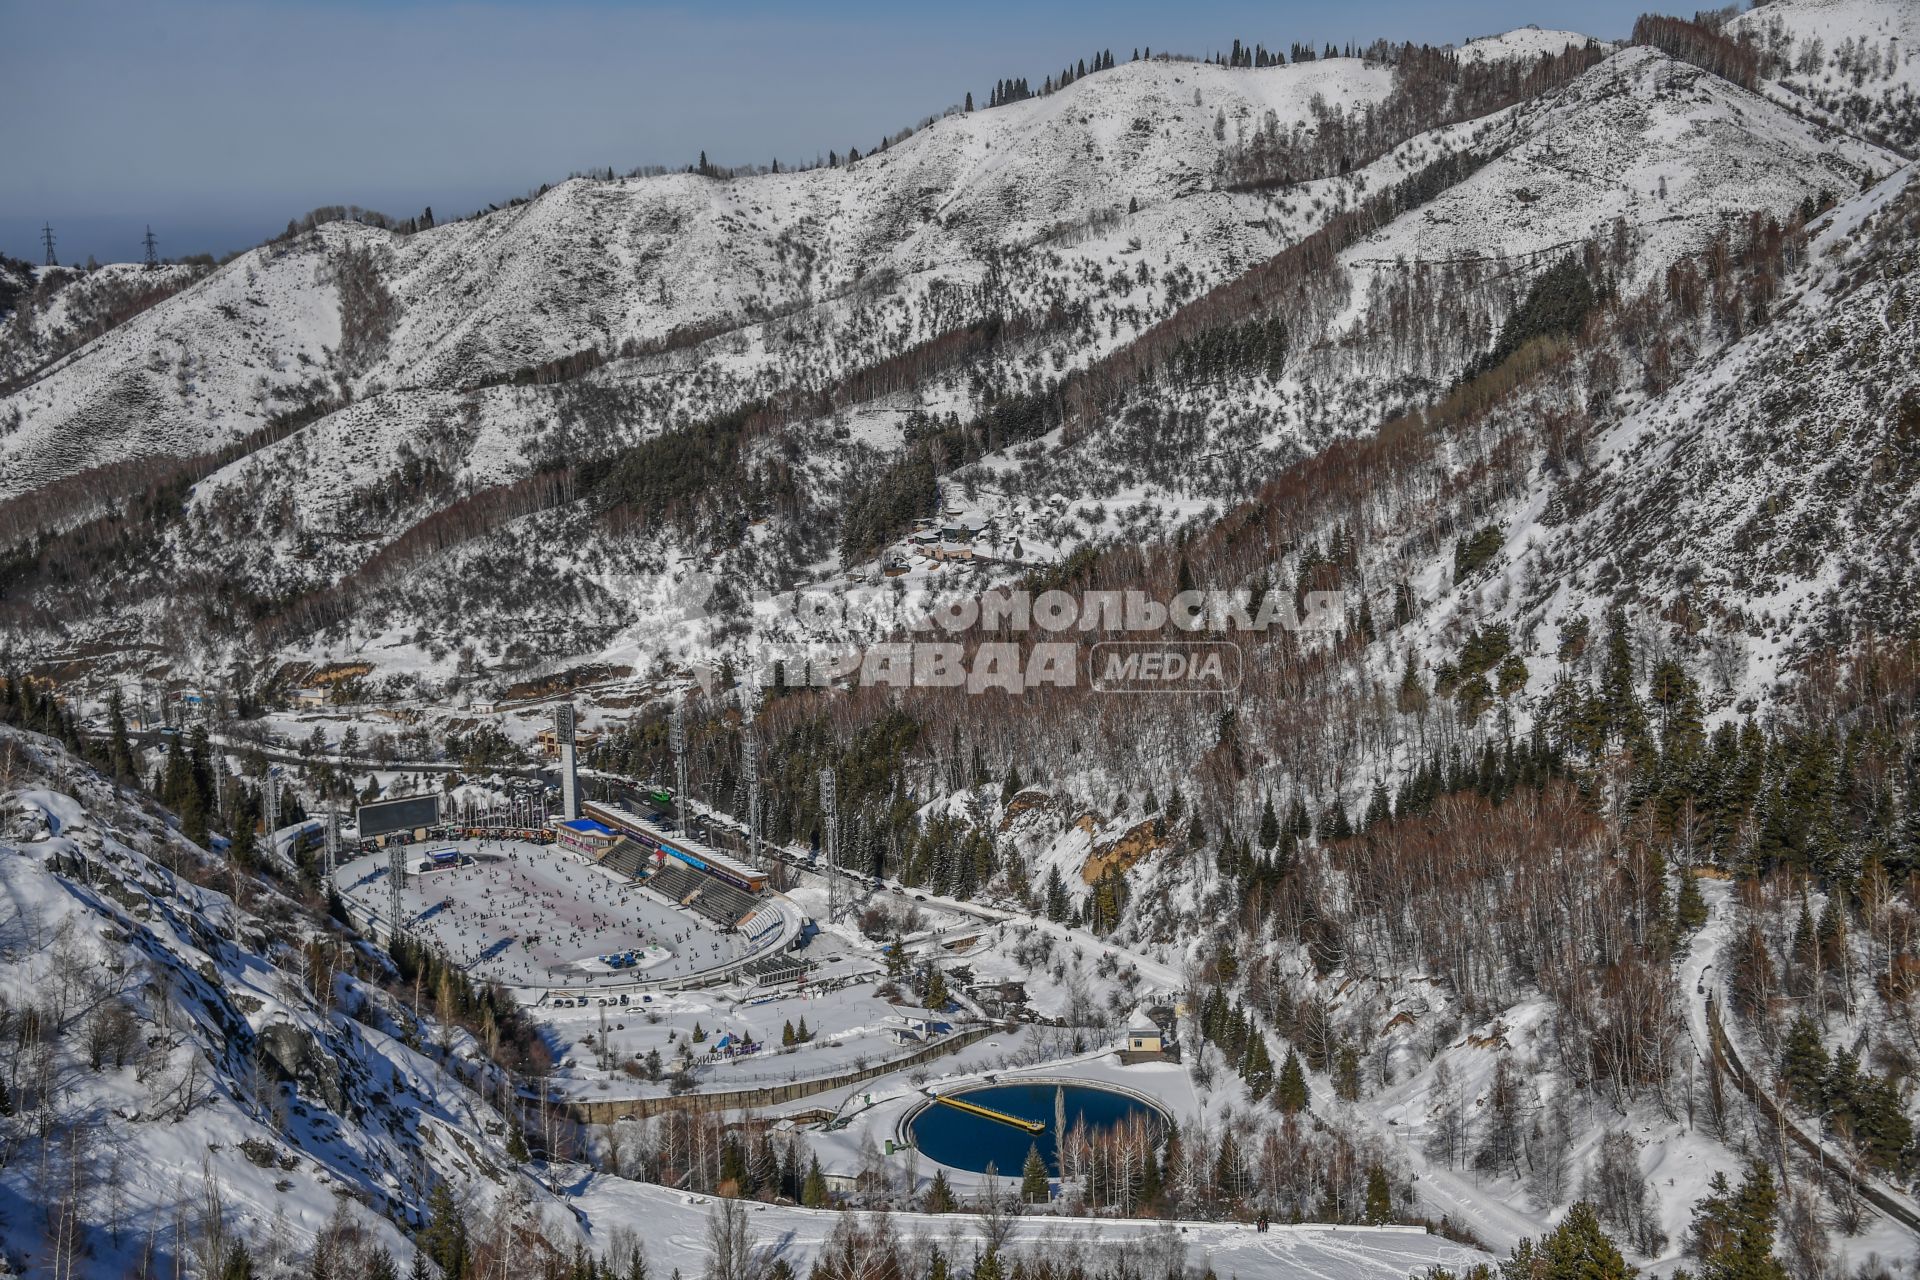 Казахстан, Чимбулак. Вид на высокогорный  каток `Медео`горнолыжного курорта Чимбулак, расположенного  на хребте Заилийский Алатау.